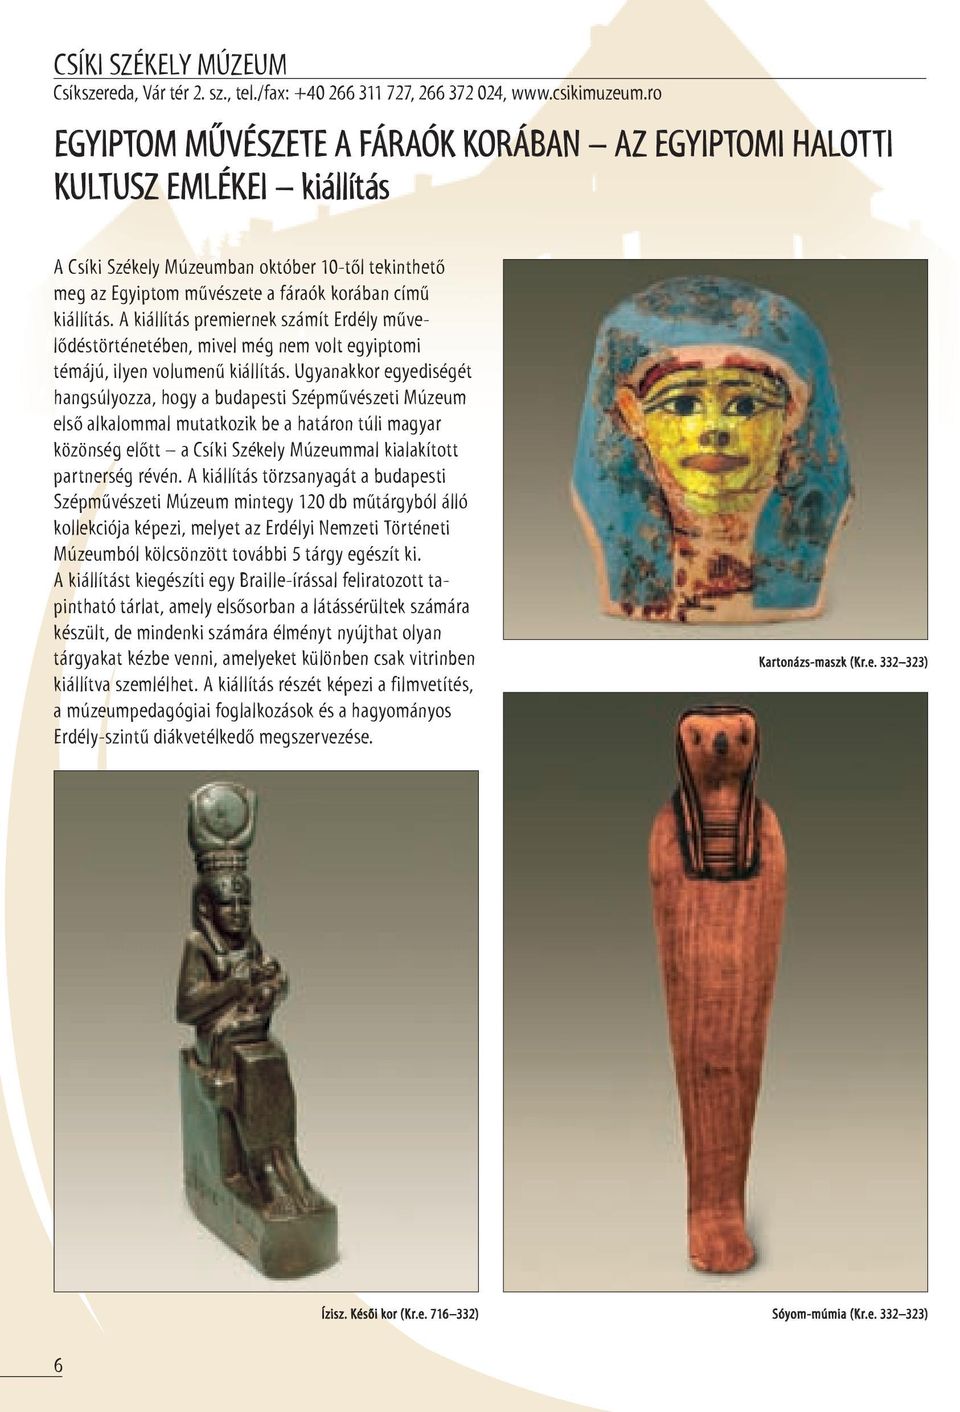 a kiállítás premiernek számít erdély művelődéstörténetében, mivel még nem volt egyiptomi témájú, ilyen volumenű kiállítás.